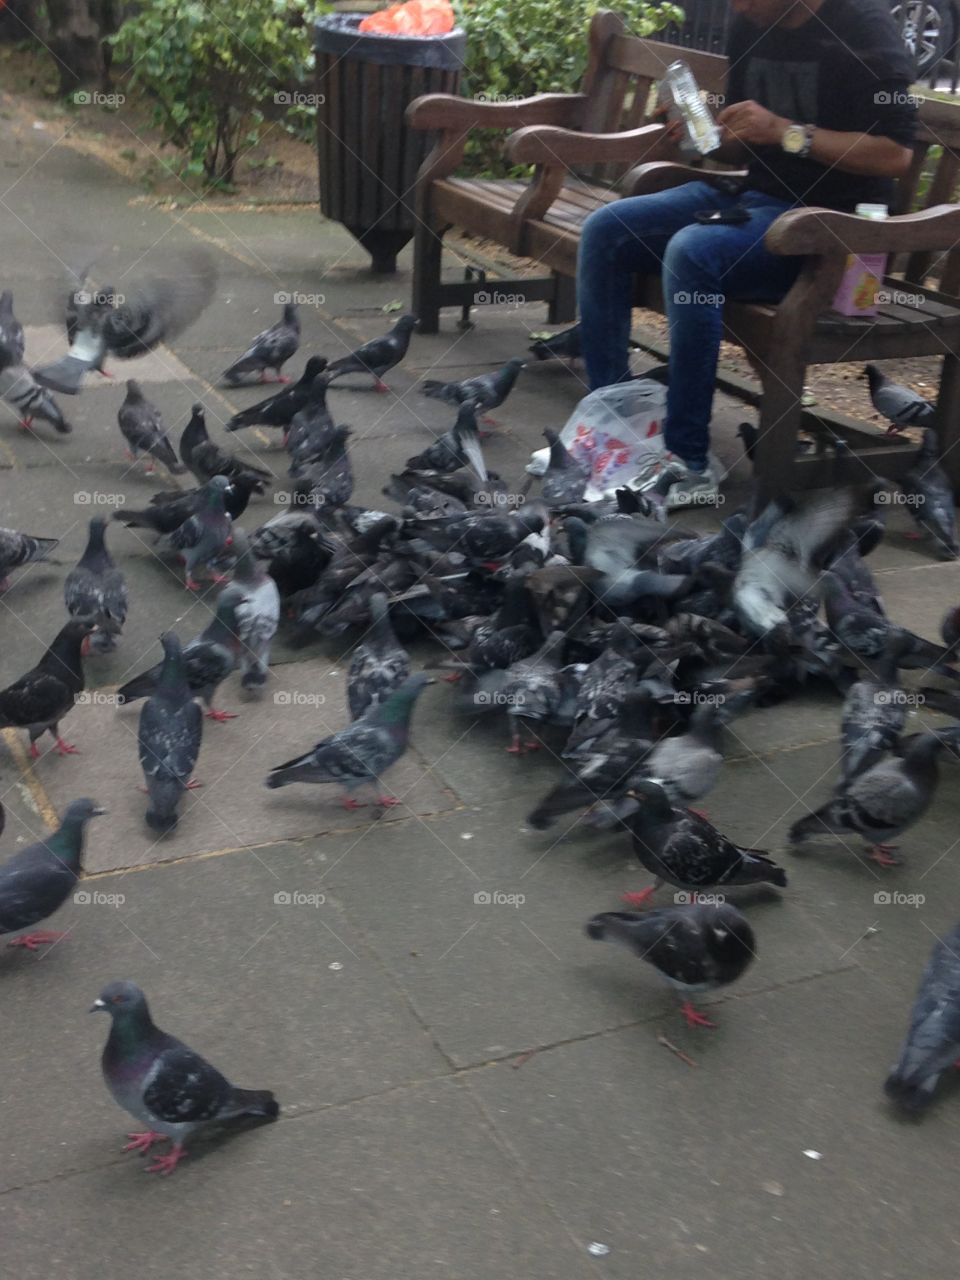 Pigeons of soho sq